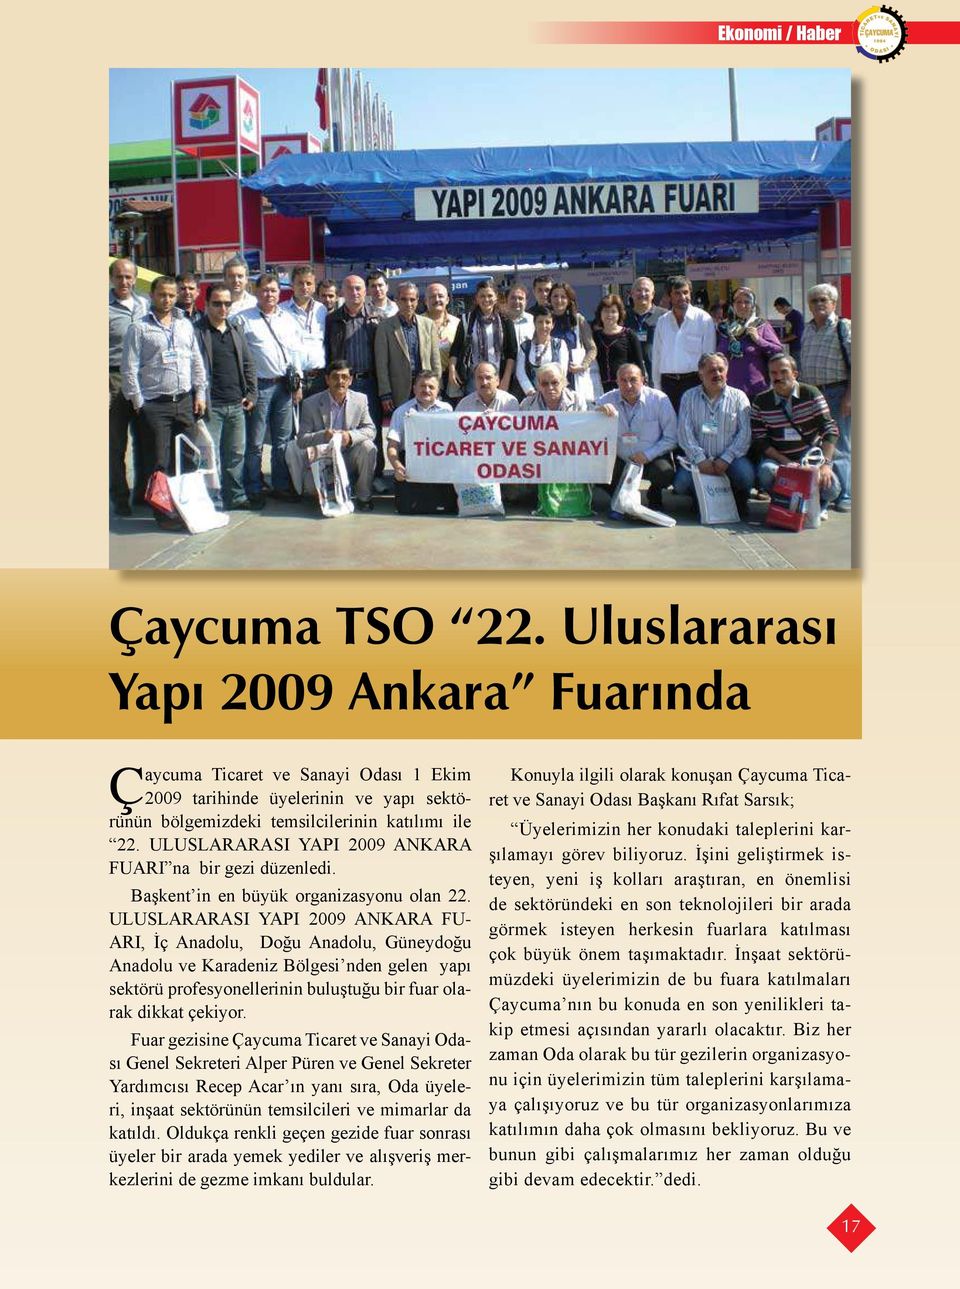 ULUSLARARASI YAPI 2009 ANKARA FU- ARI, İç Anadolu, Doğu Anadolu, Güneydoğu Anadolu ve Karadeniz Bölgesi nden gelen yapı sektörü profesyonellerinin buluştuğu bir fuar olarak dikkat çekiyor.